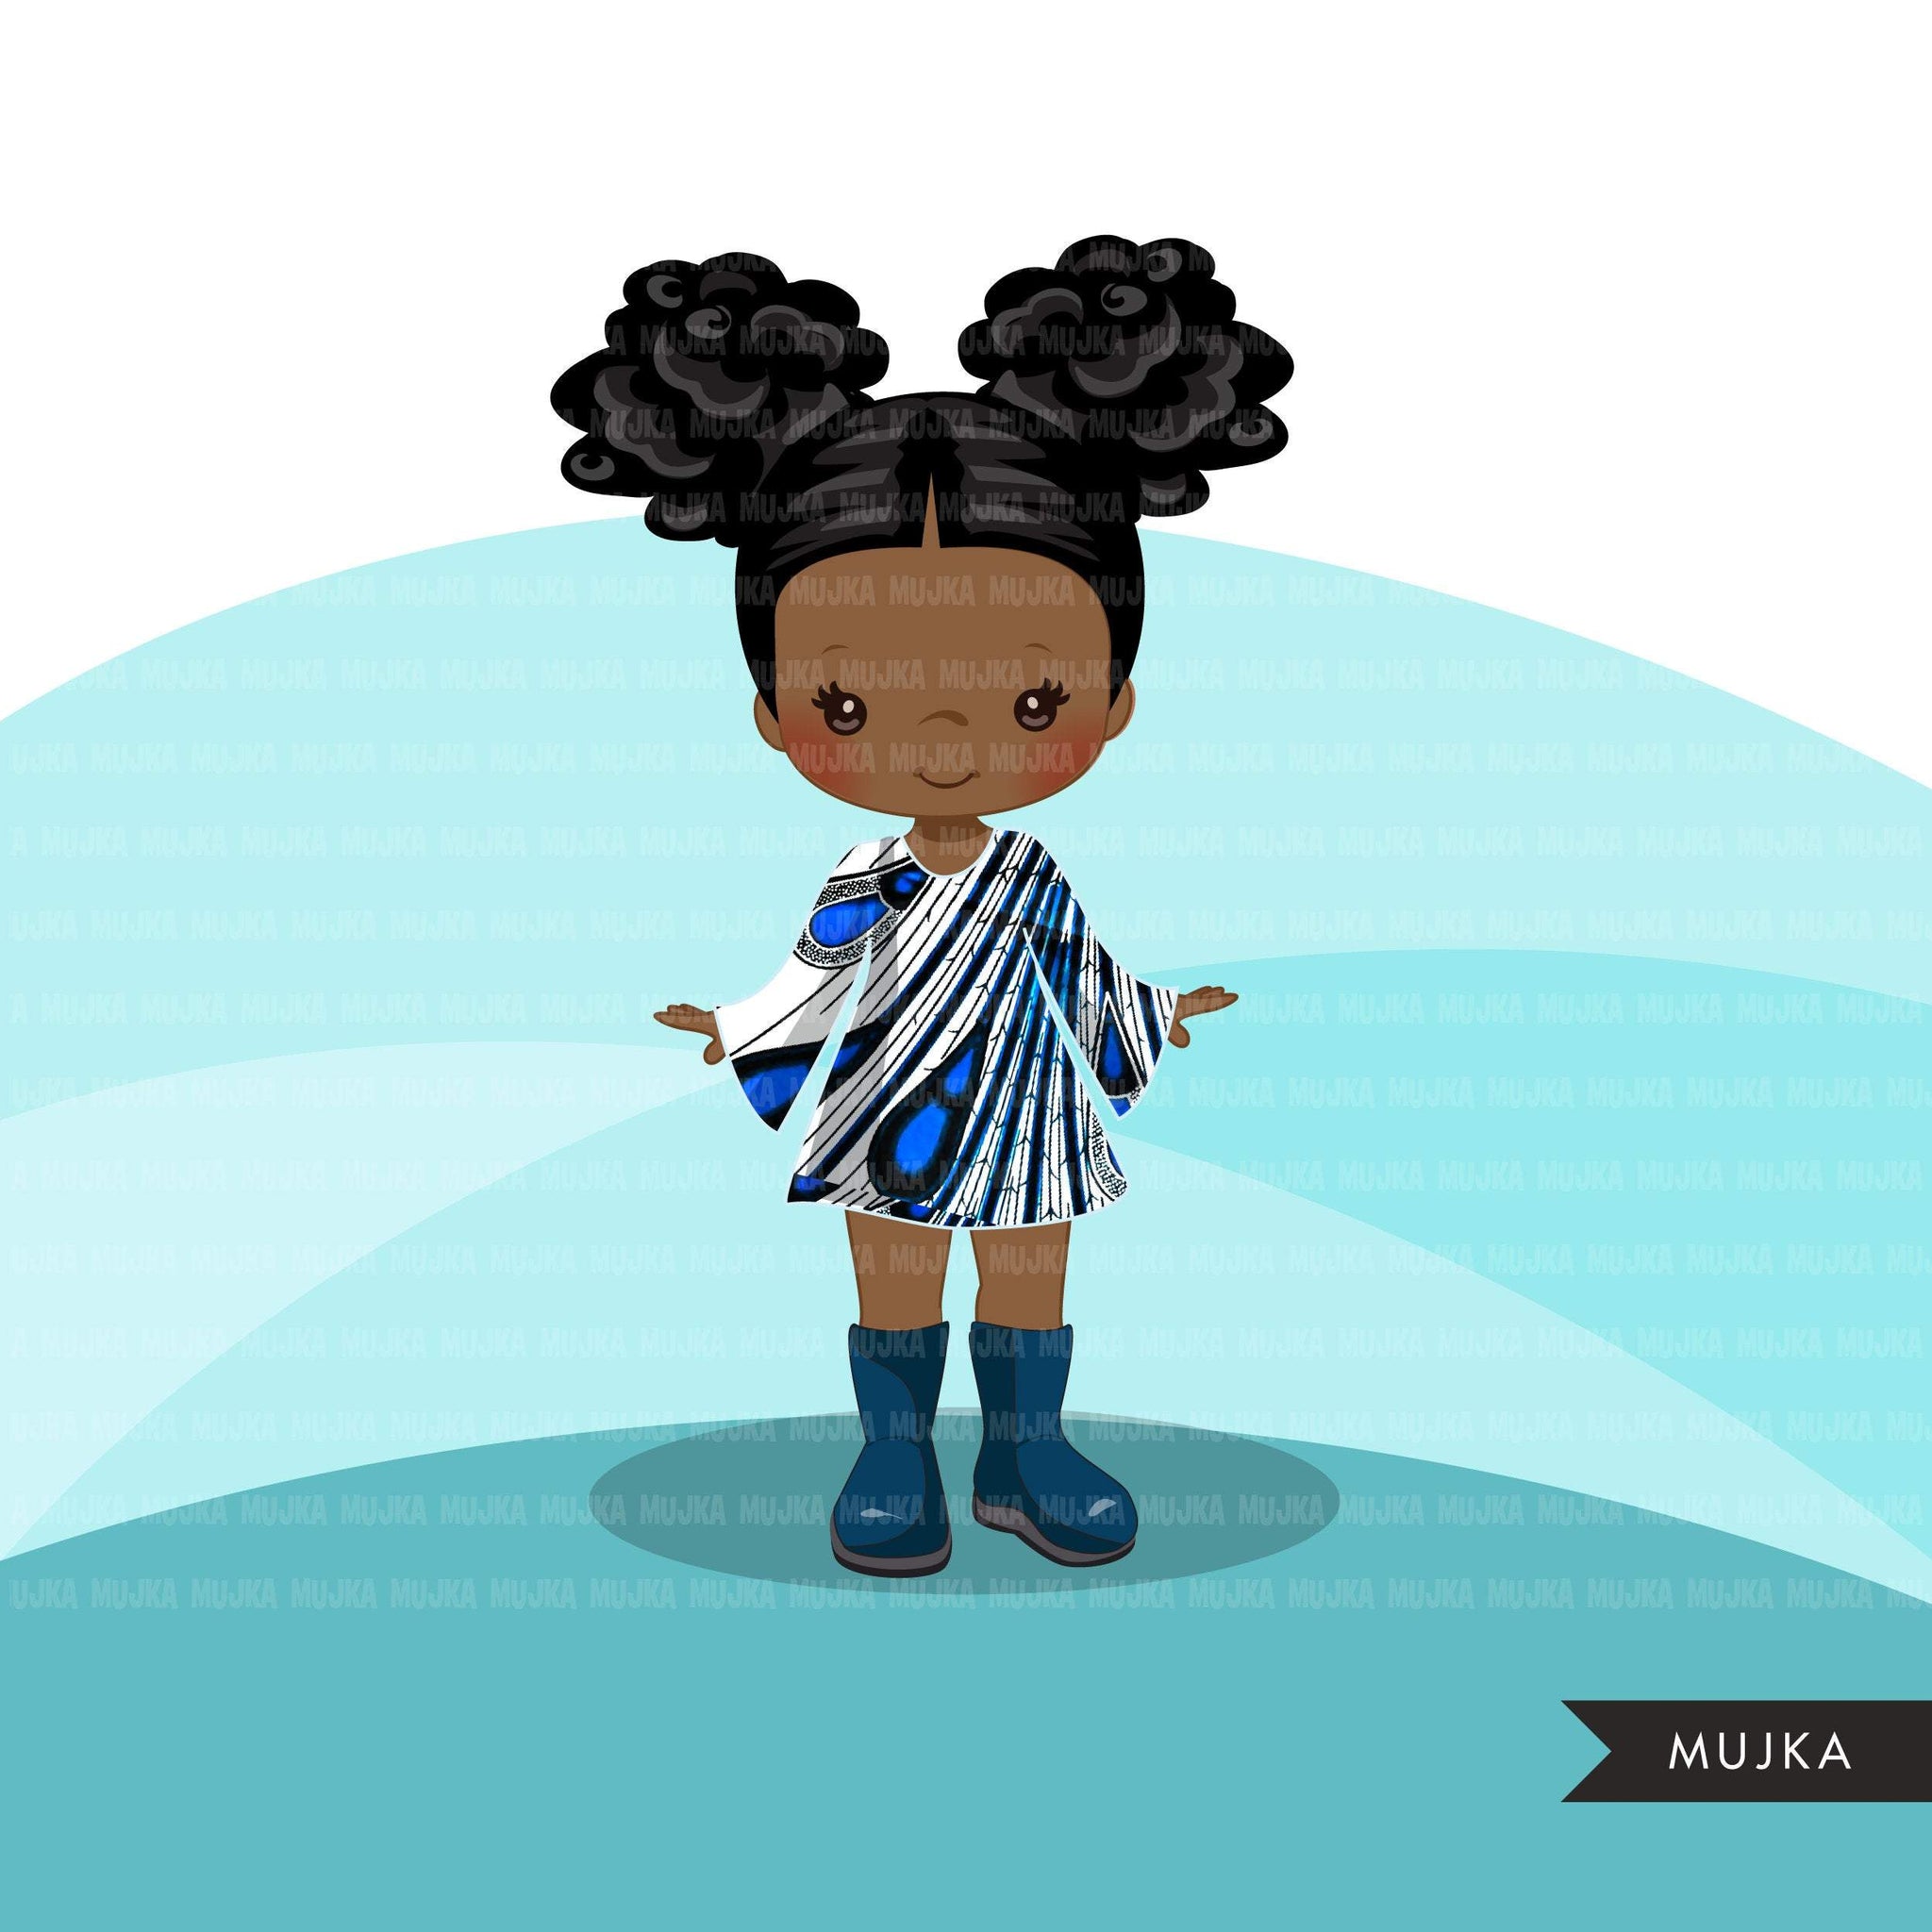 Avatar de clipart de garota negra, saia de gravata borboleta com estampa de pavão de Ancara, tecido africano, gráficos de história negra clipart de garota afro PNG